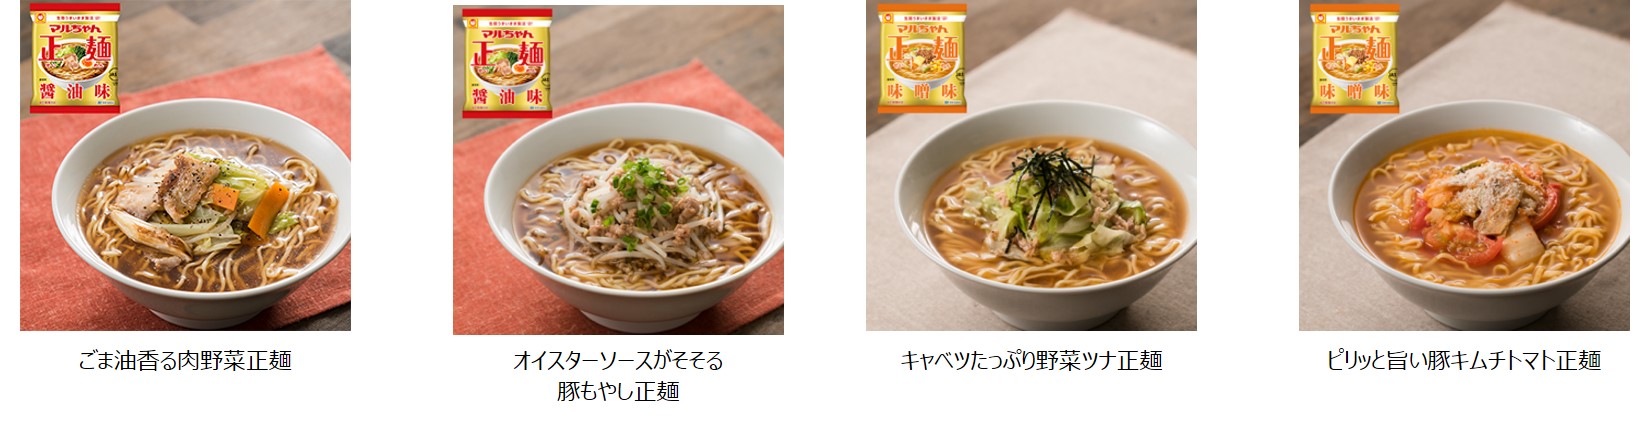 マルちゃん正麺 のスゴい食べ方発見 Instagramで見つけた目から鱗のオリジナルレシピ Dime アットダイム